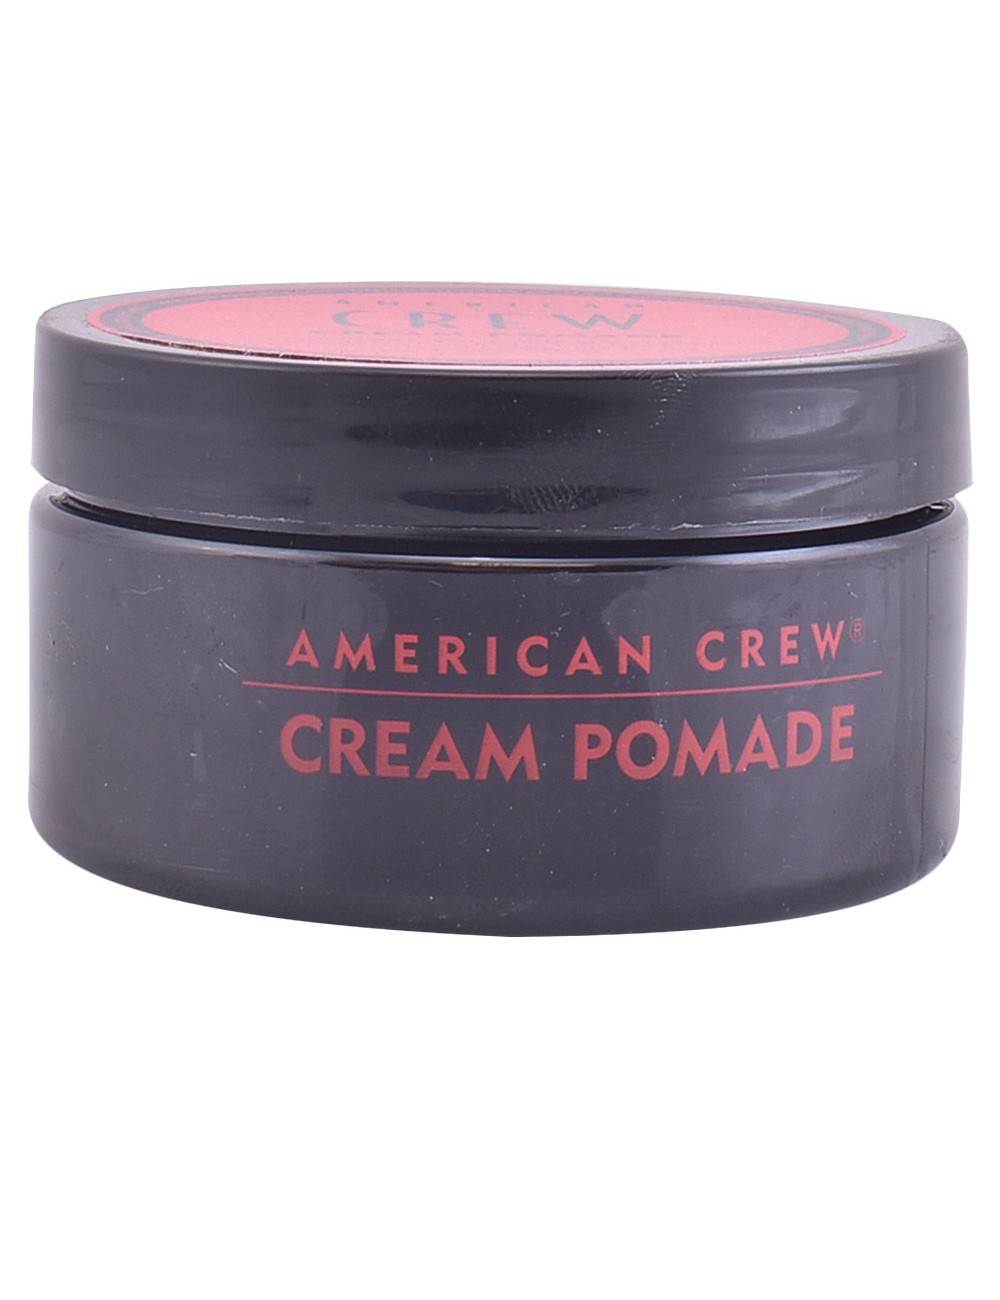 POMADE cream 85 gr NE101557